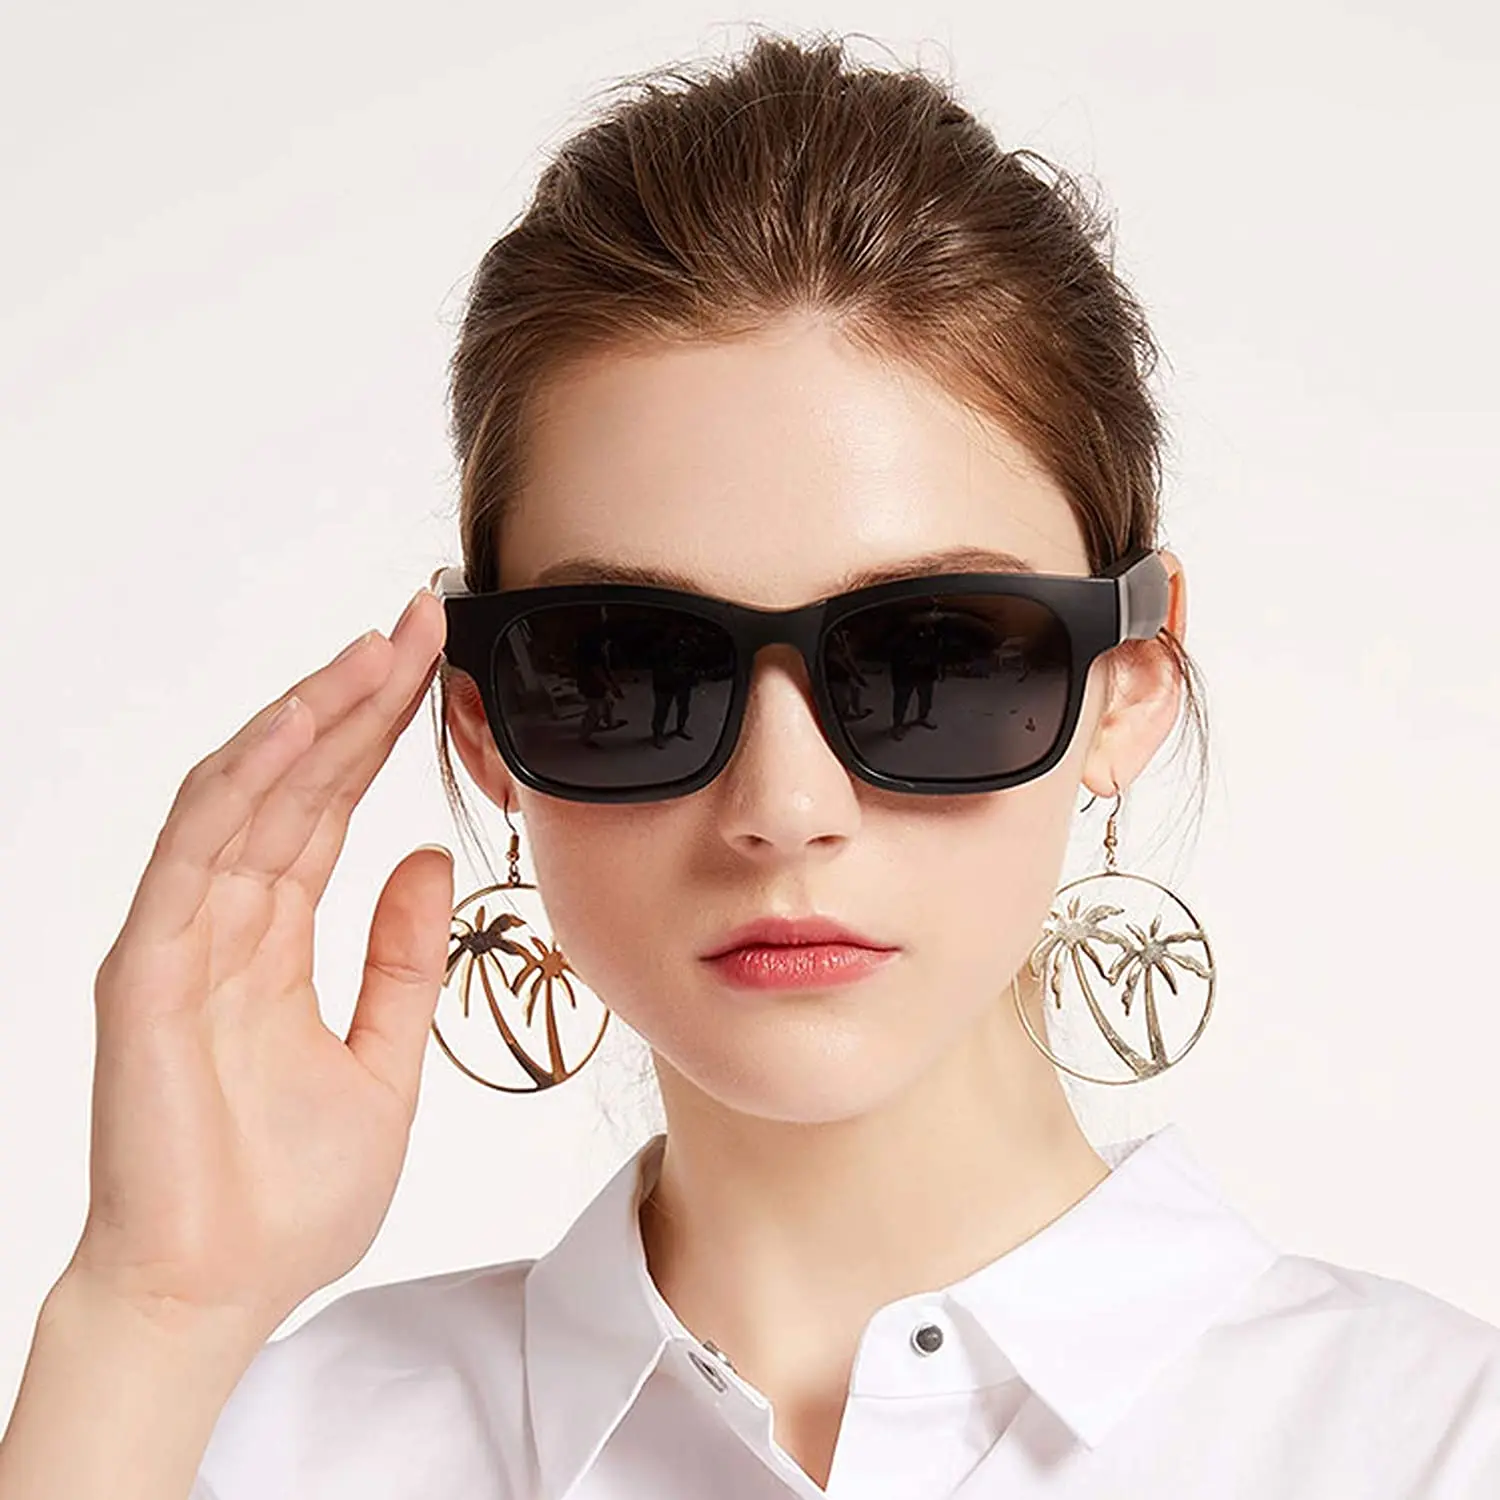 저렴한 스마트 안경 무선 블루투스 선글라스 오픈 귀 음악 및 핸즈프리 통화, 편광 렌즈, 스피커 내부, 휴대 전화 연결